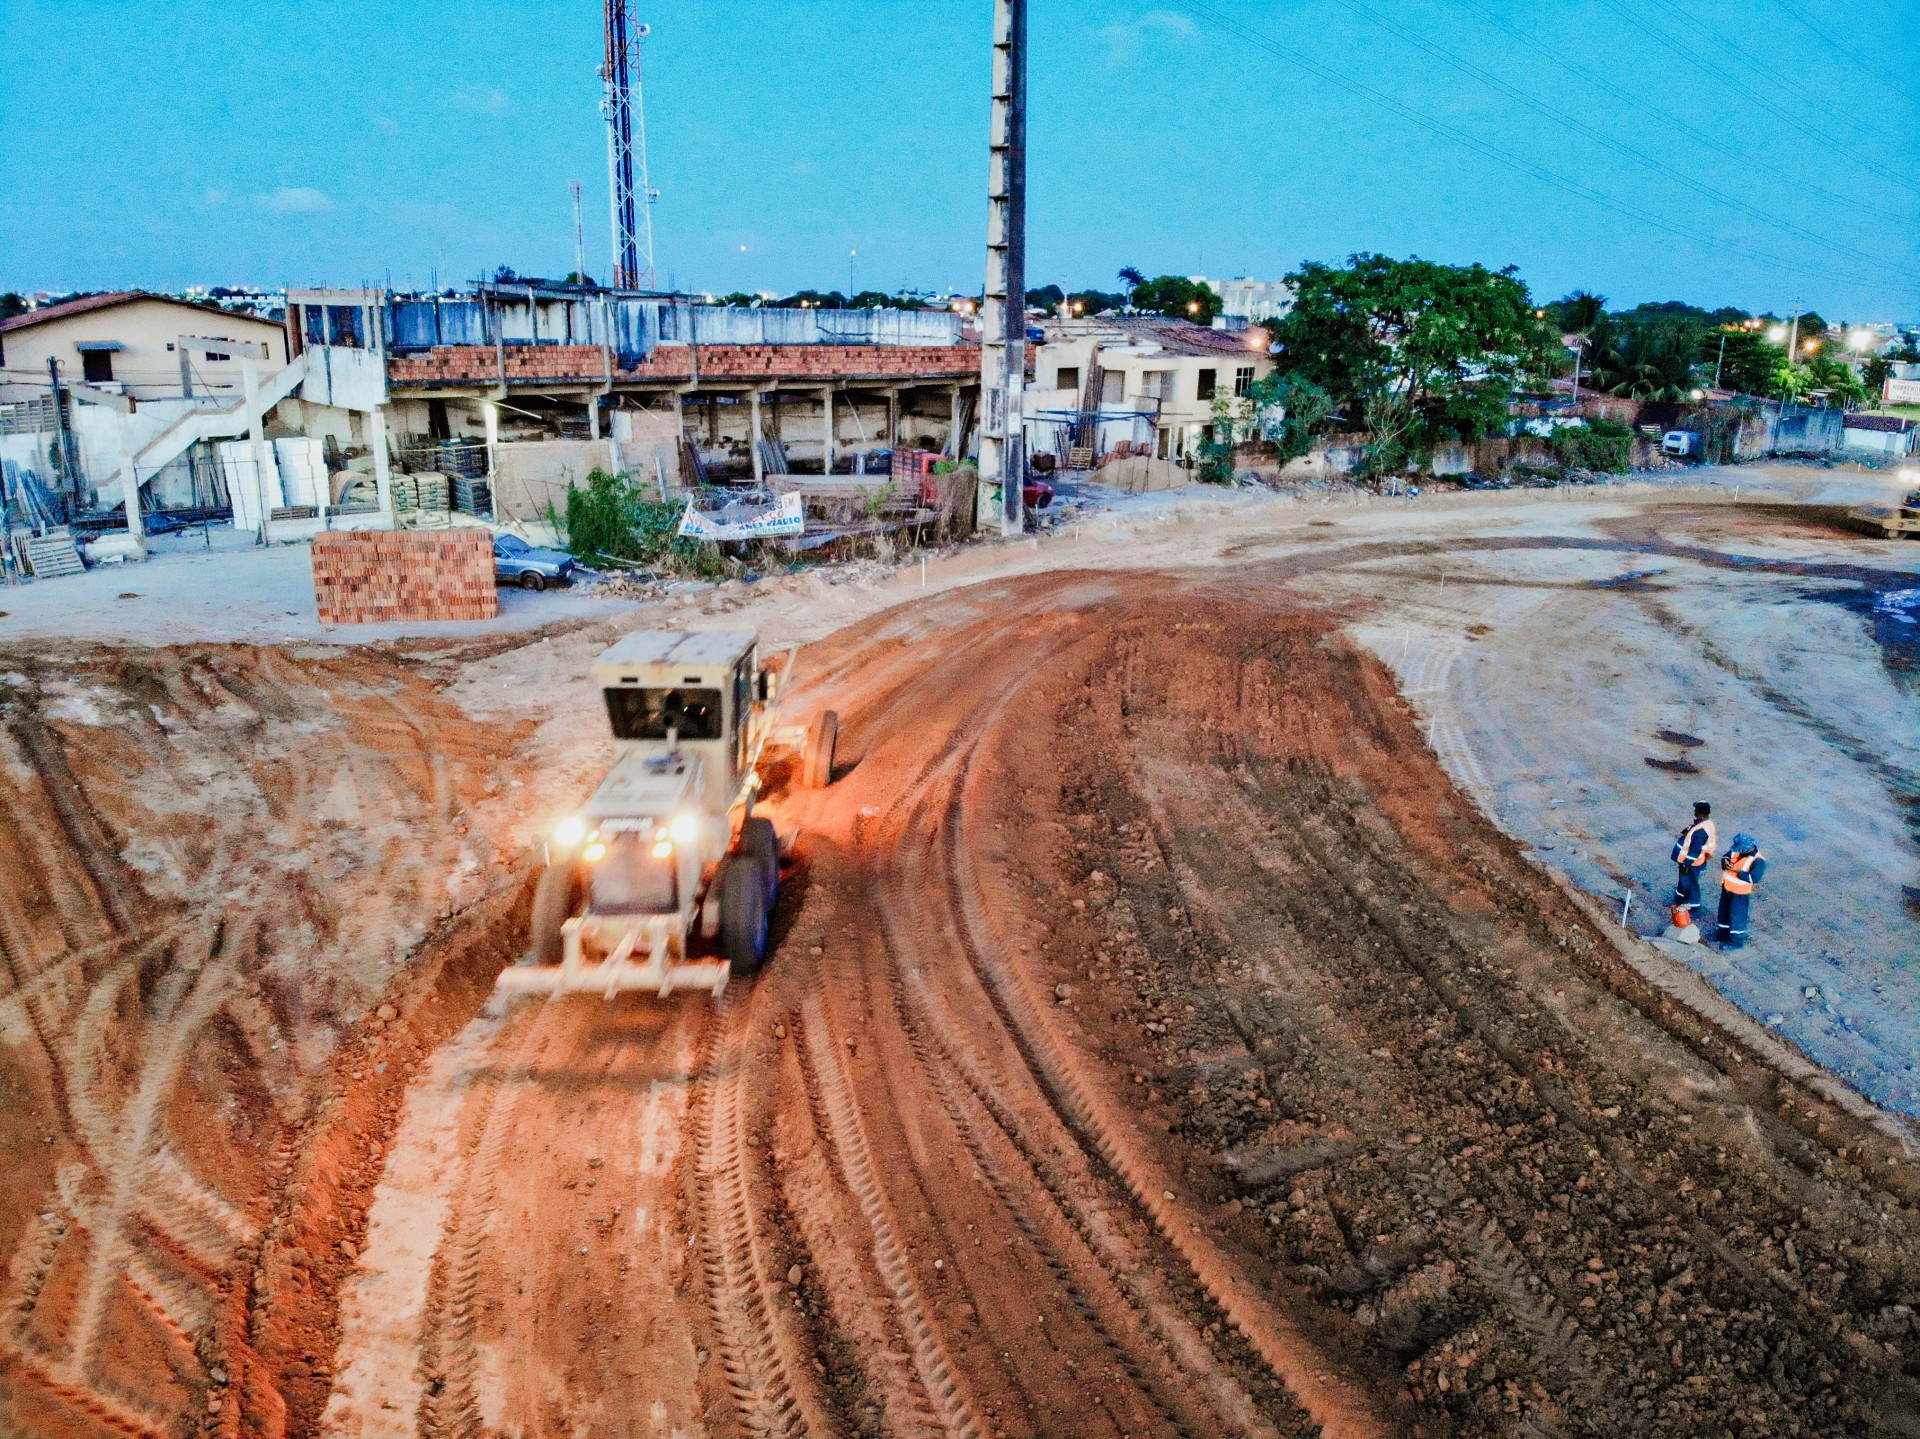 Empresas de construção civil pesada, responsáveis por obras de grande porte, espera melhora para o setor após privatização da Lubnor (Foto: JÚLIO CAESAR)